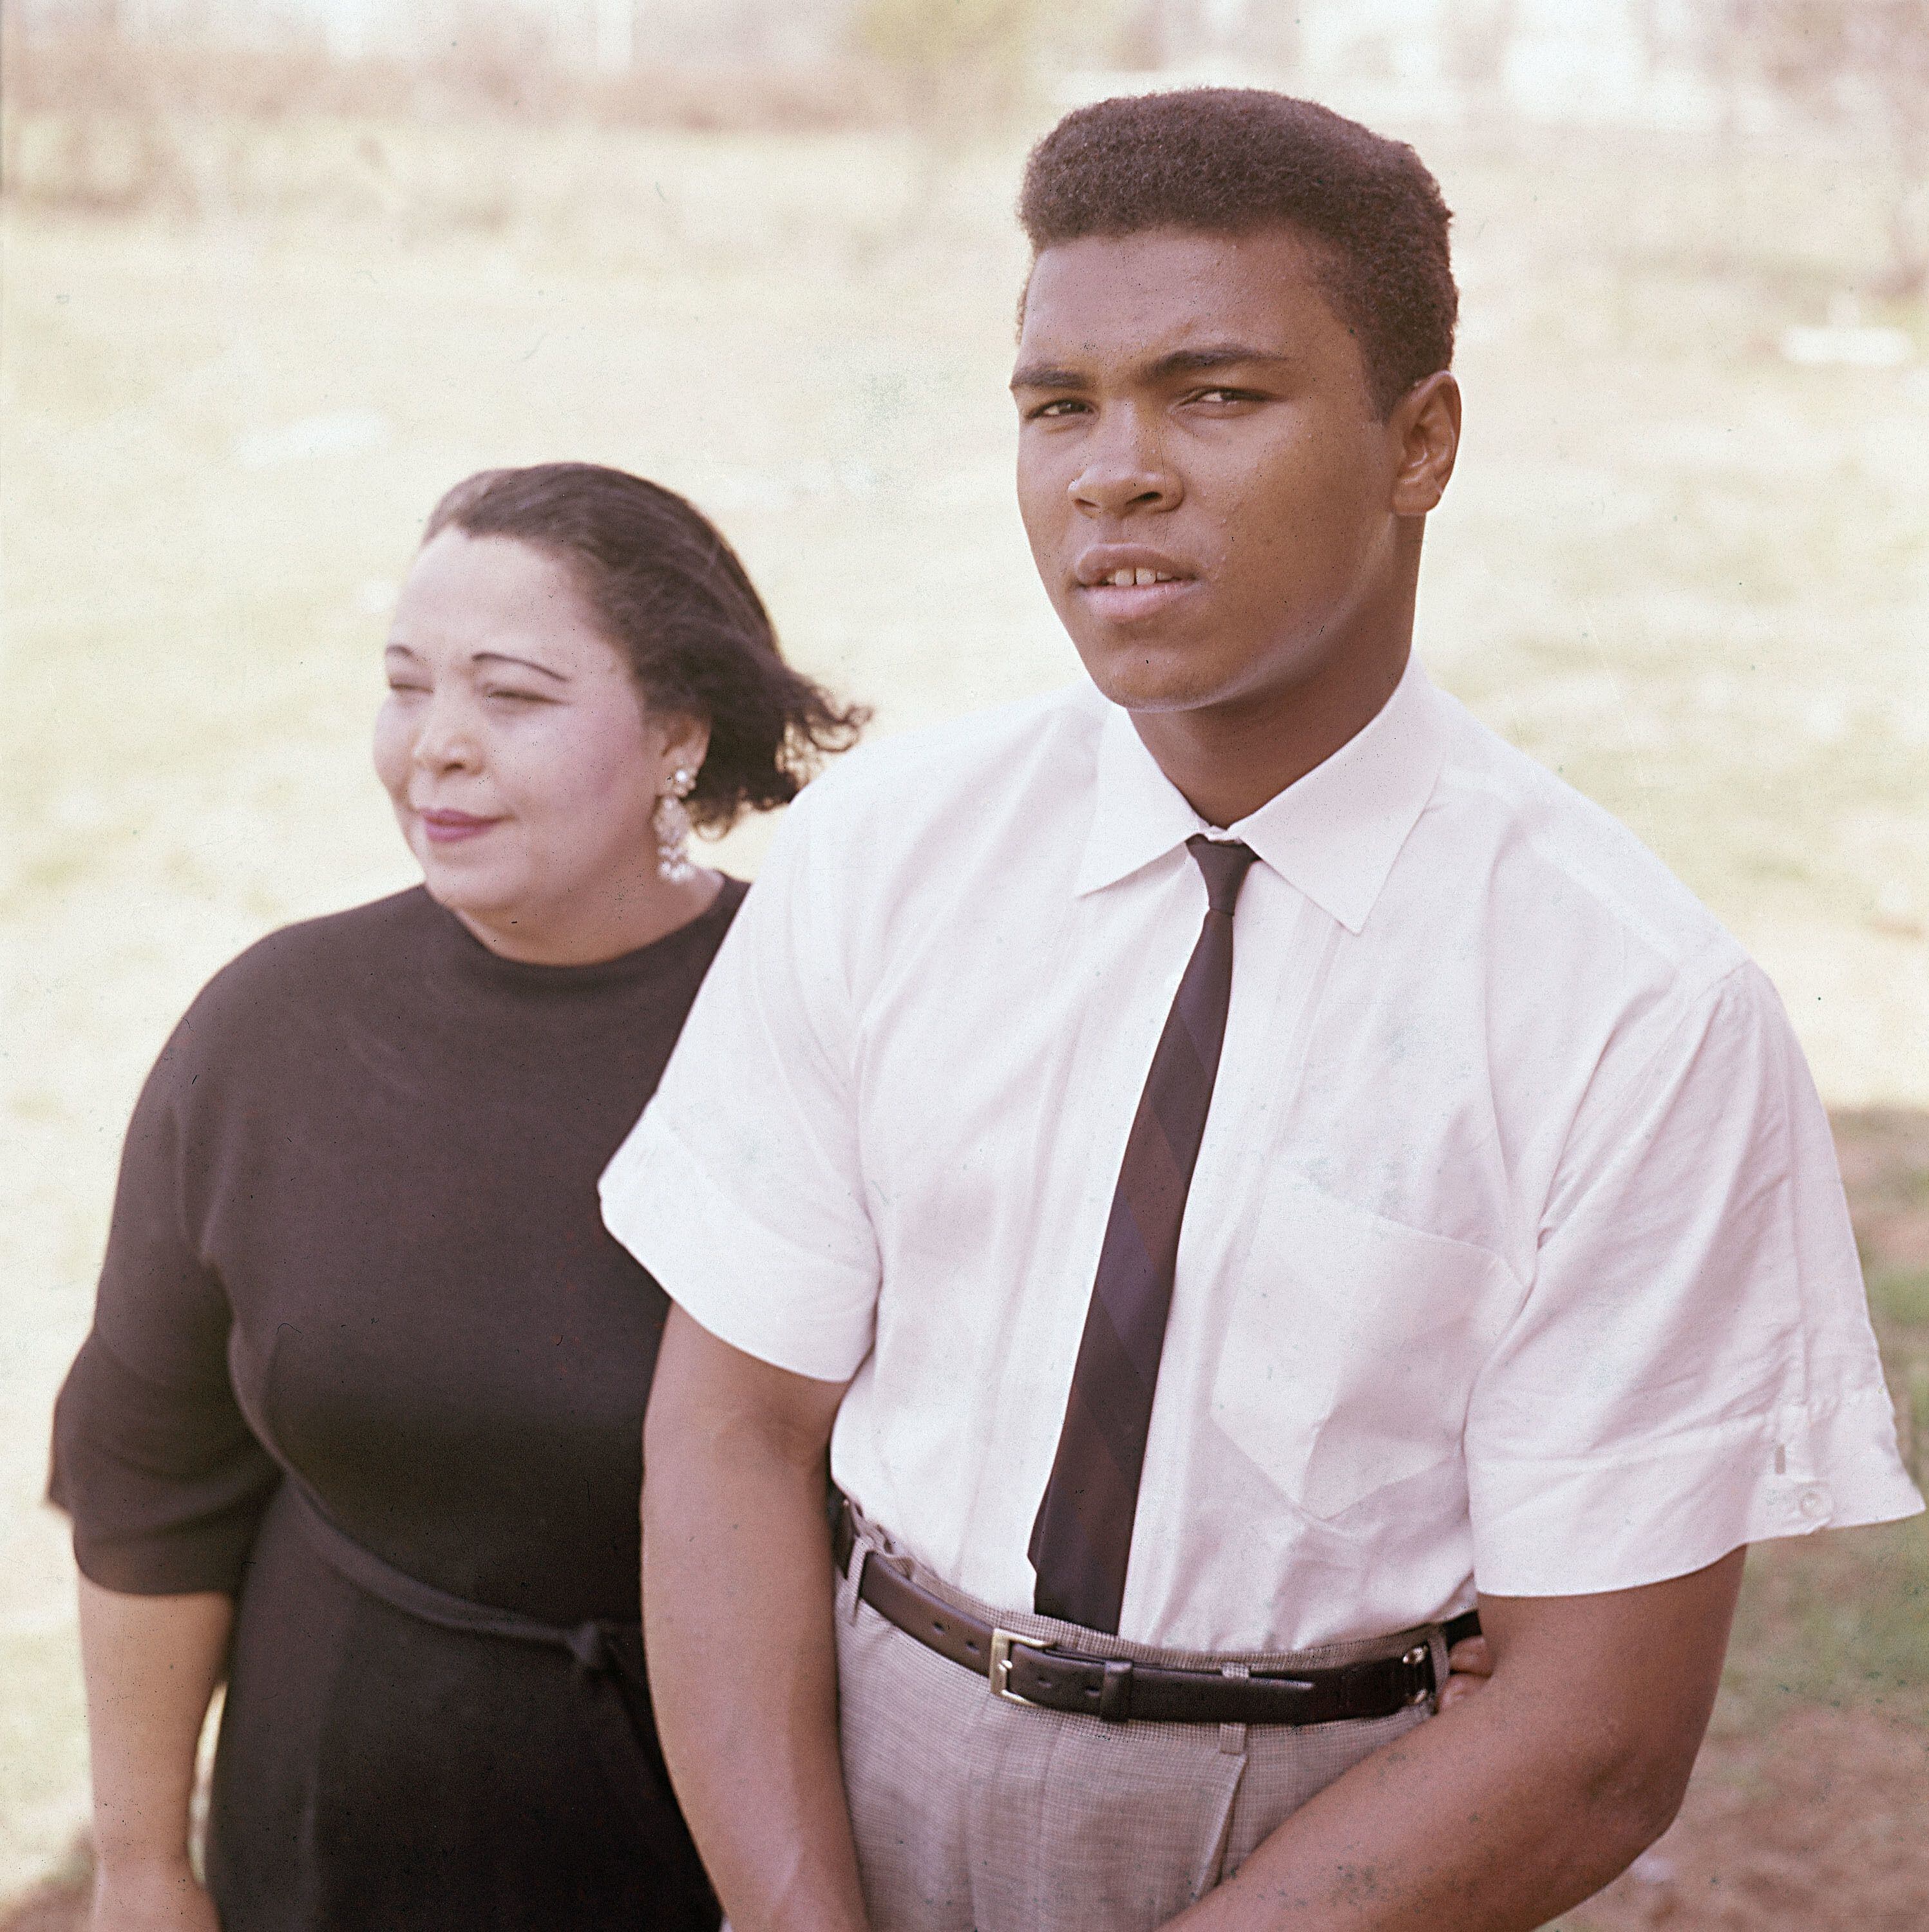 Muhammad Ali The Lip of Louisville T-Shirt